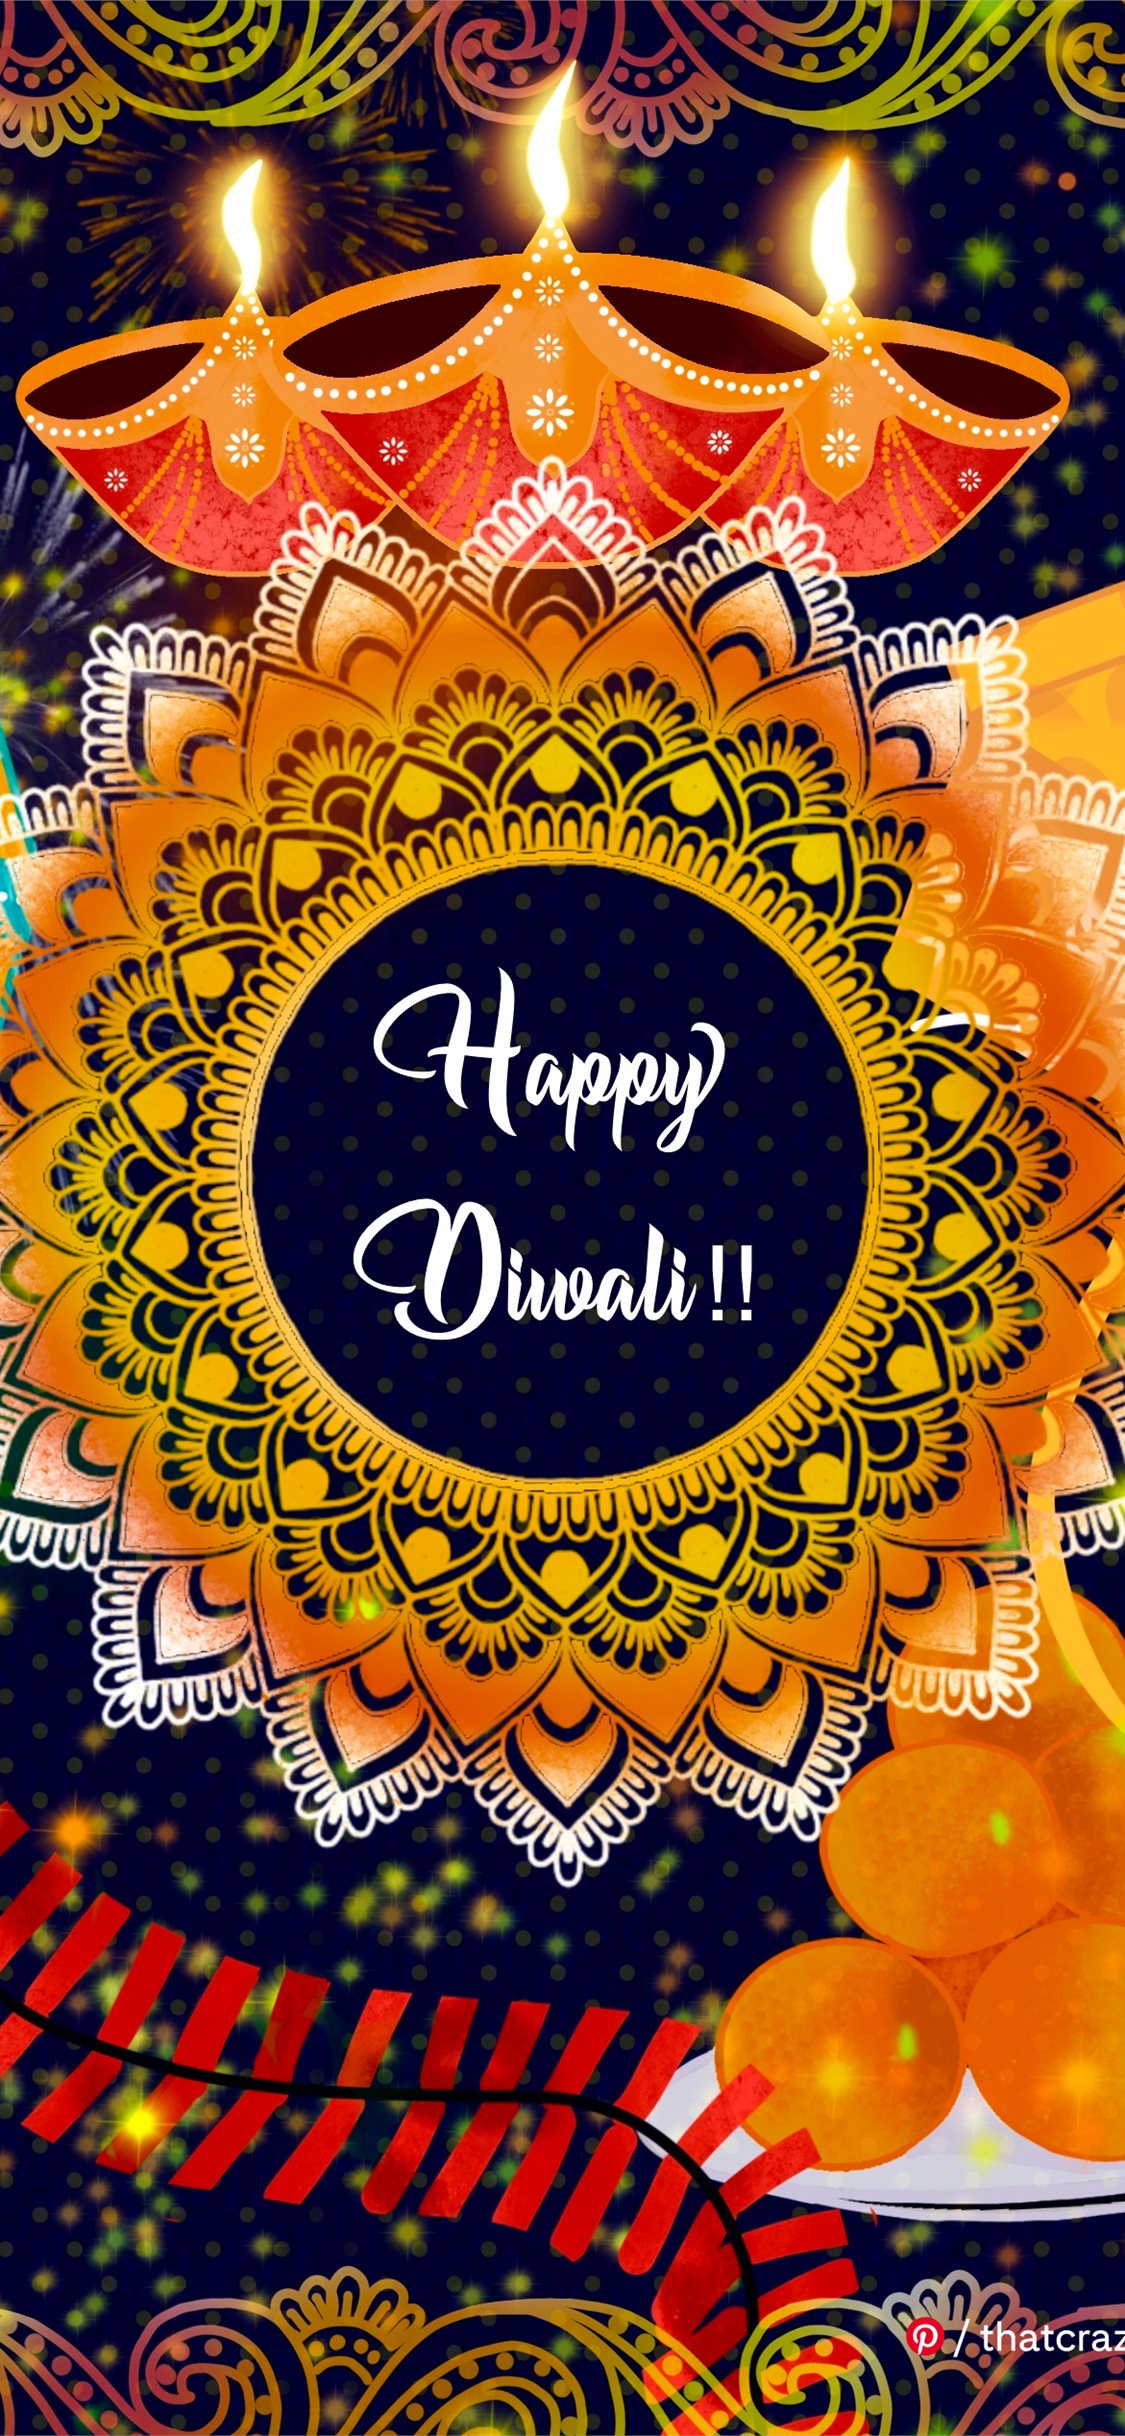 Happy Diwali by Vinita Varier iPhone Wallpapers Free Download